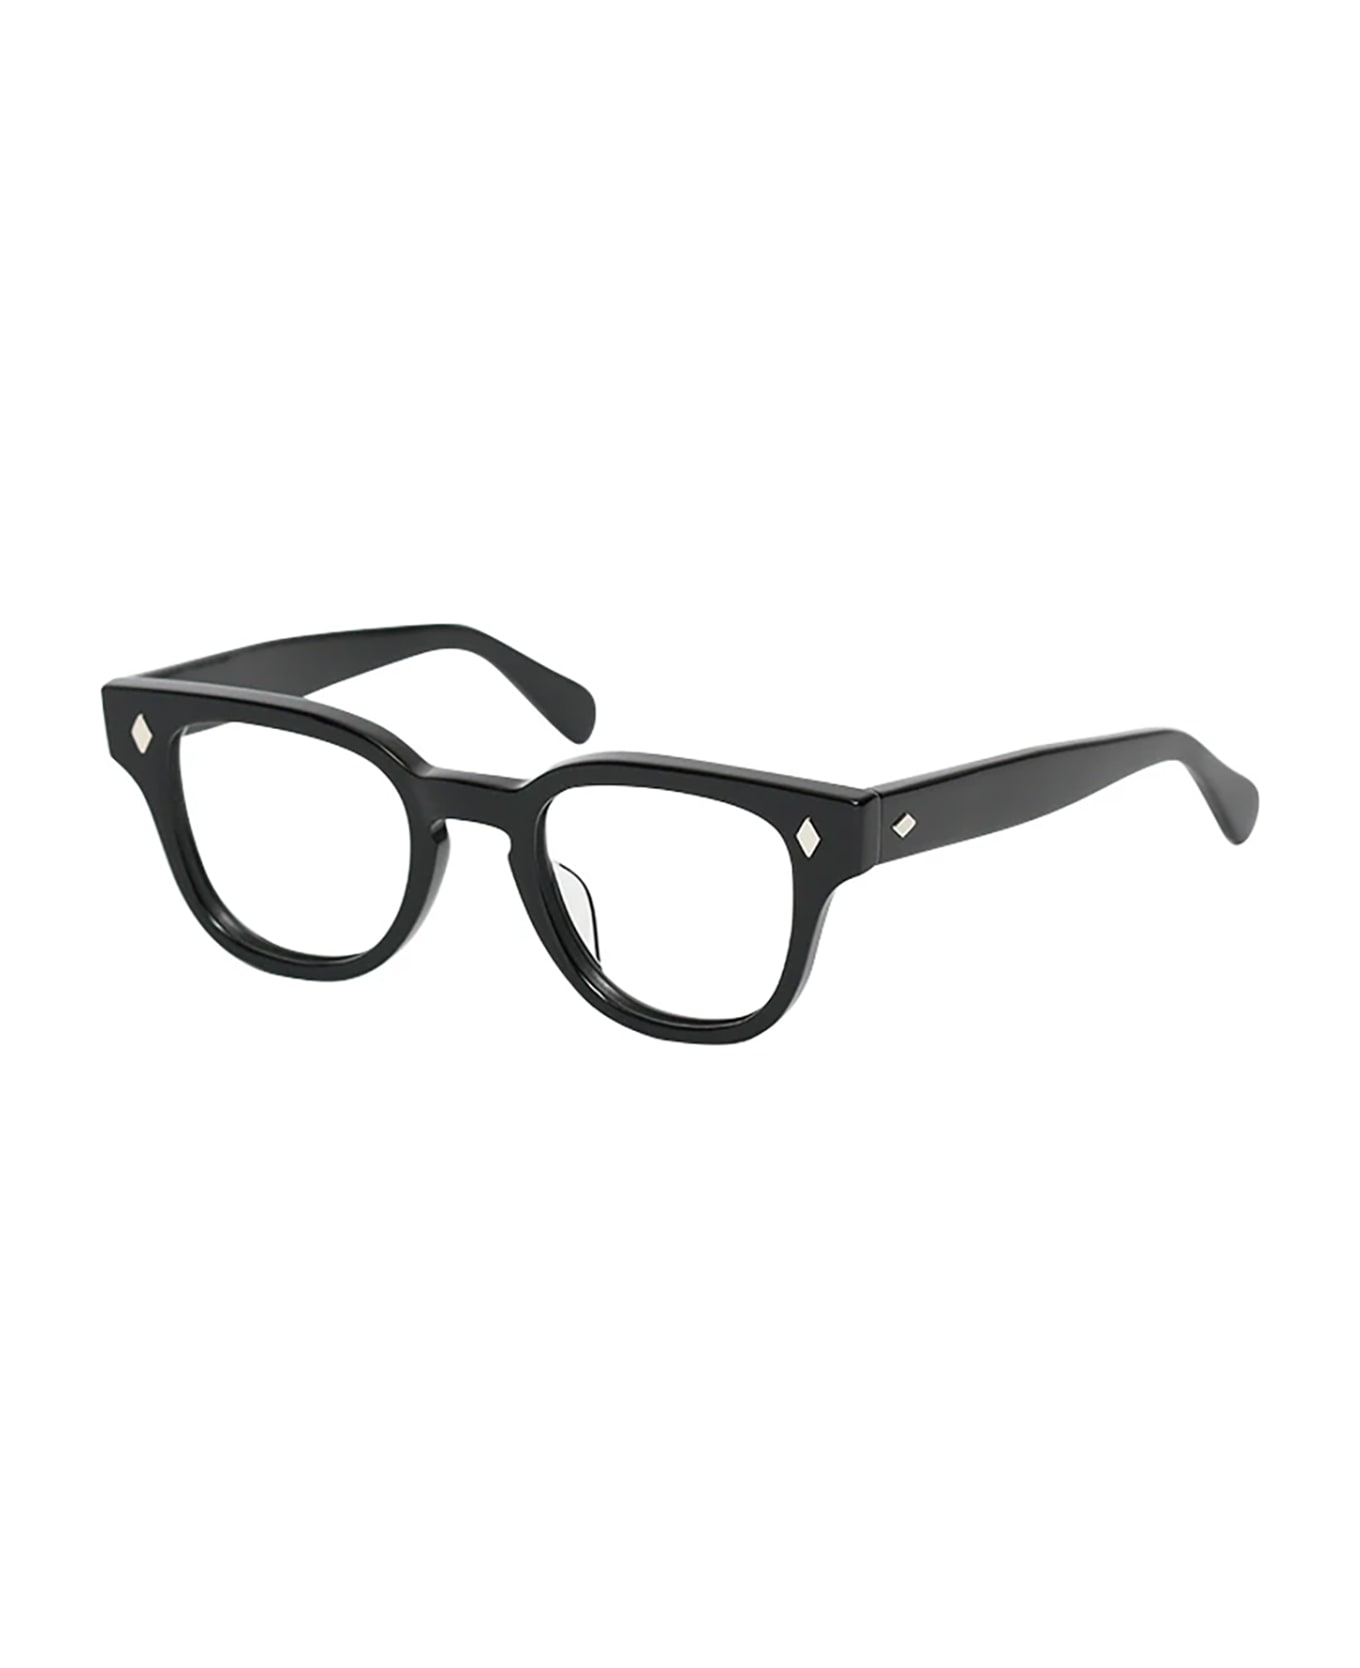 Julius Tart Optical JTPL/007A BRYAN Eyewear - Black